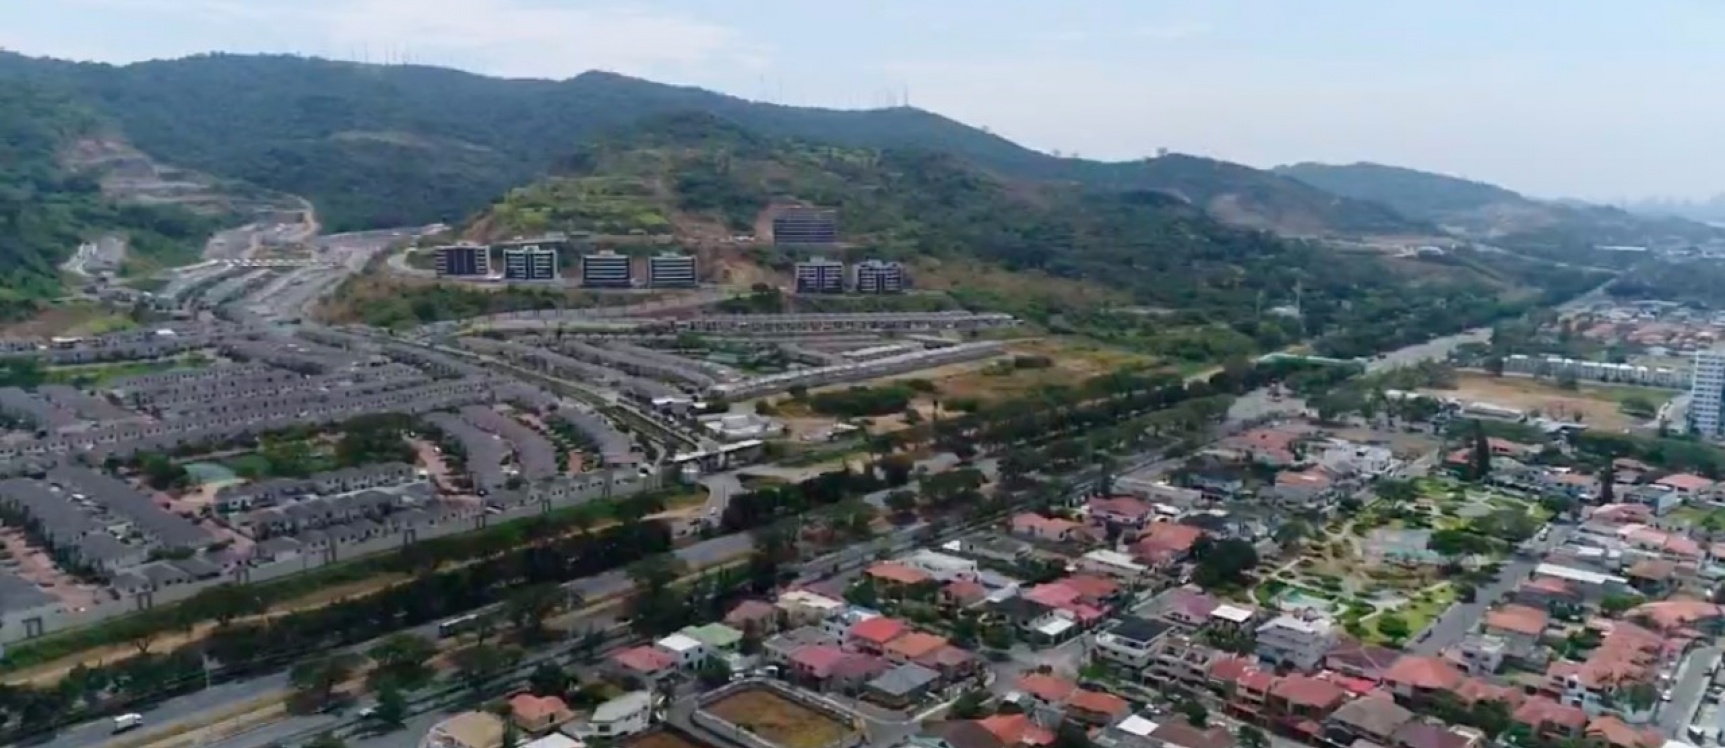 GeoBienes - Terreno en venta Km 19 via a la costa  - Plusvalia Guayaquil Casas de venta y alquiler Inmobiliaria Ecuador